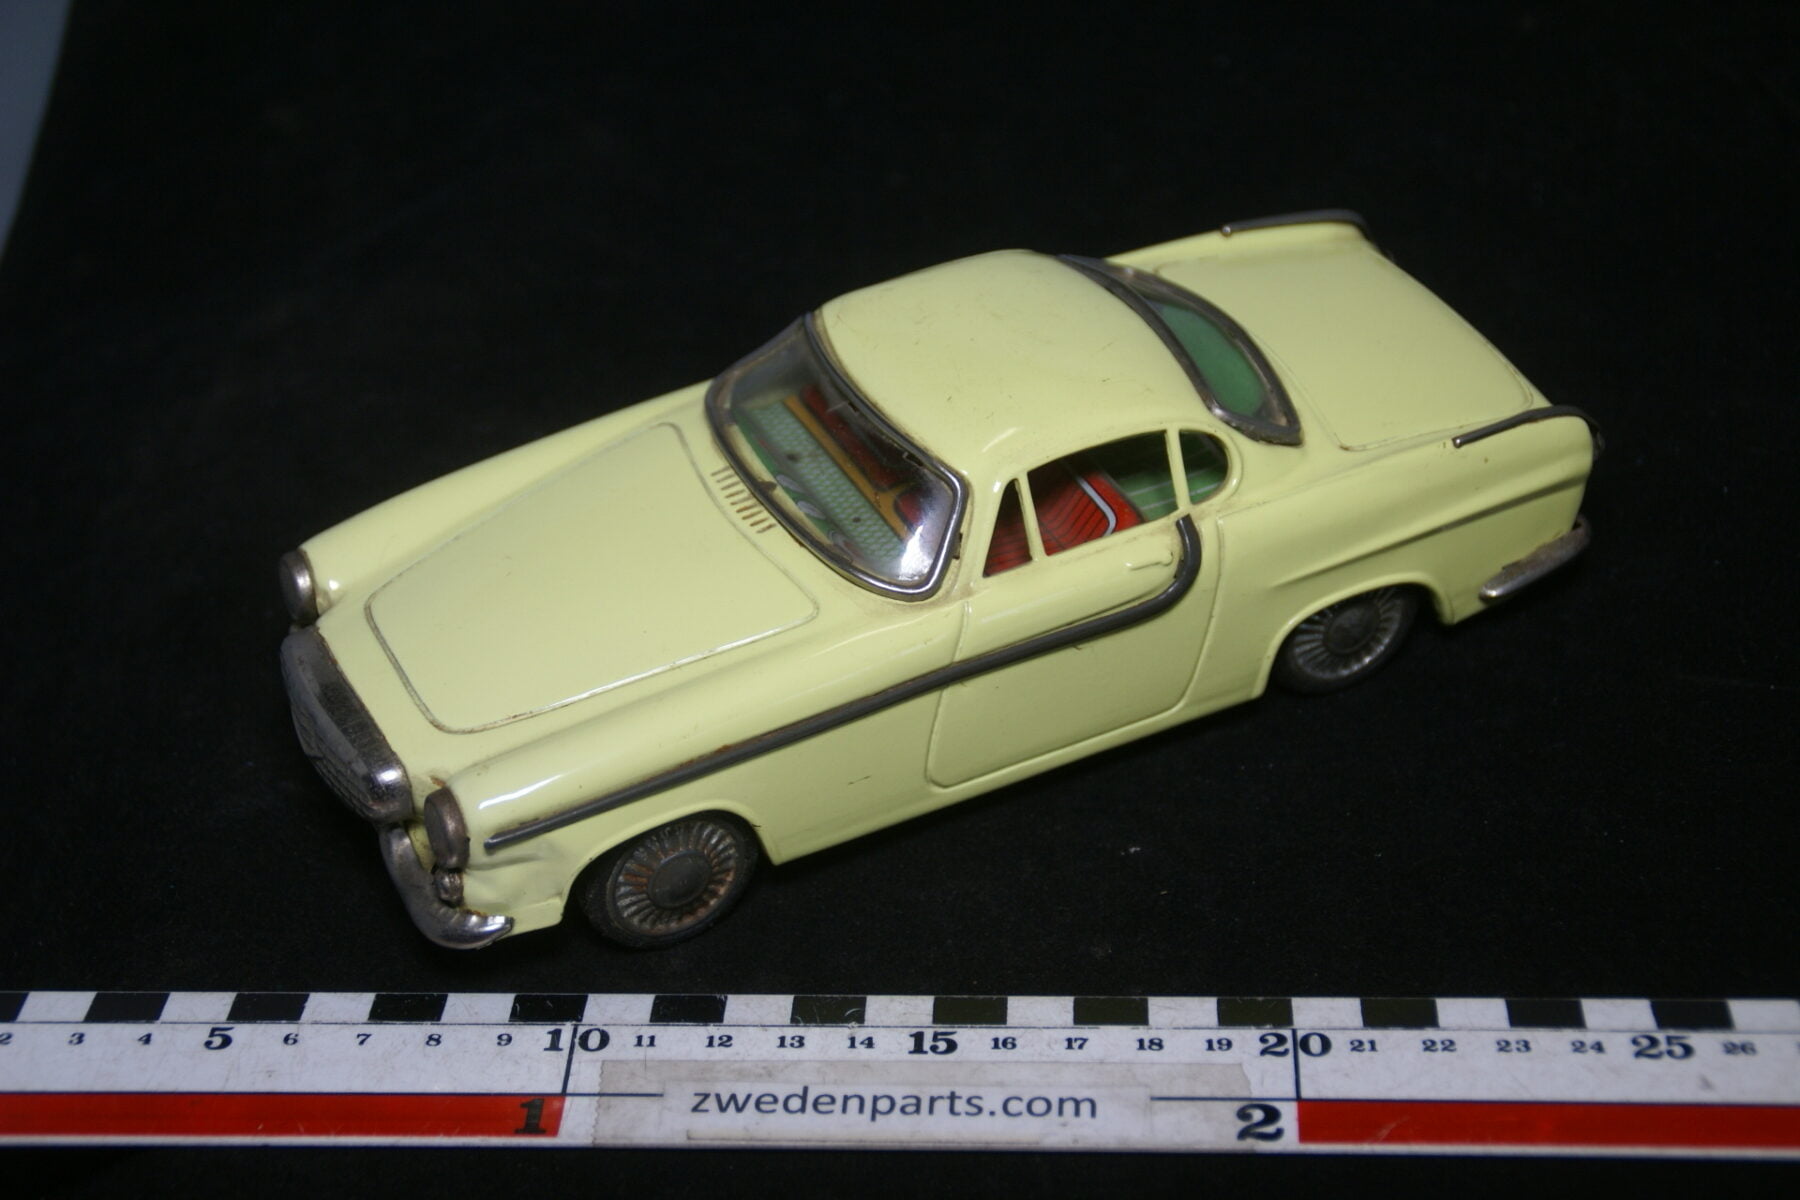 DSC02152 ca. 1962 miniatuur Volvo 1800 Jensen geel ca 200 mm lang, blik zeer goede staat-39c7a1a2